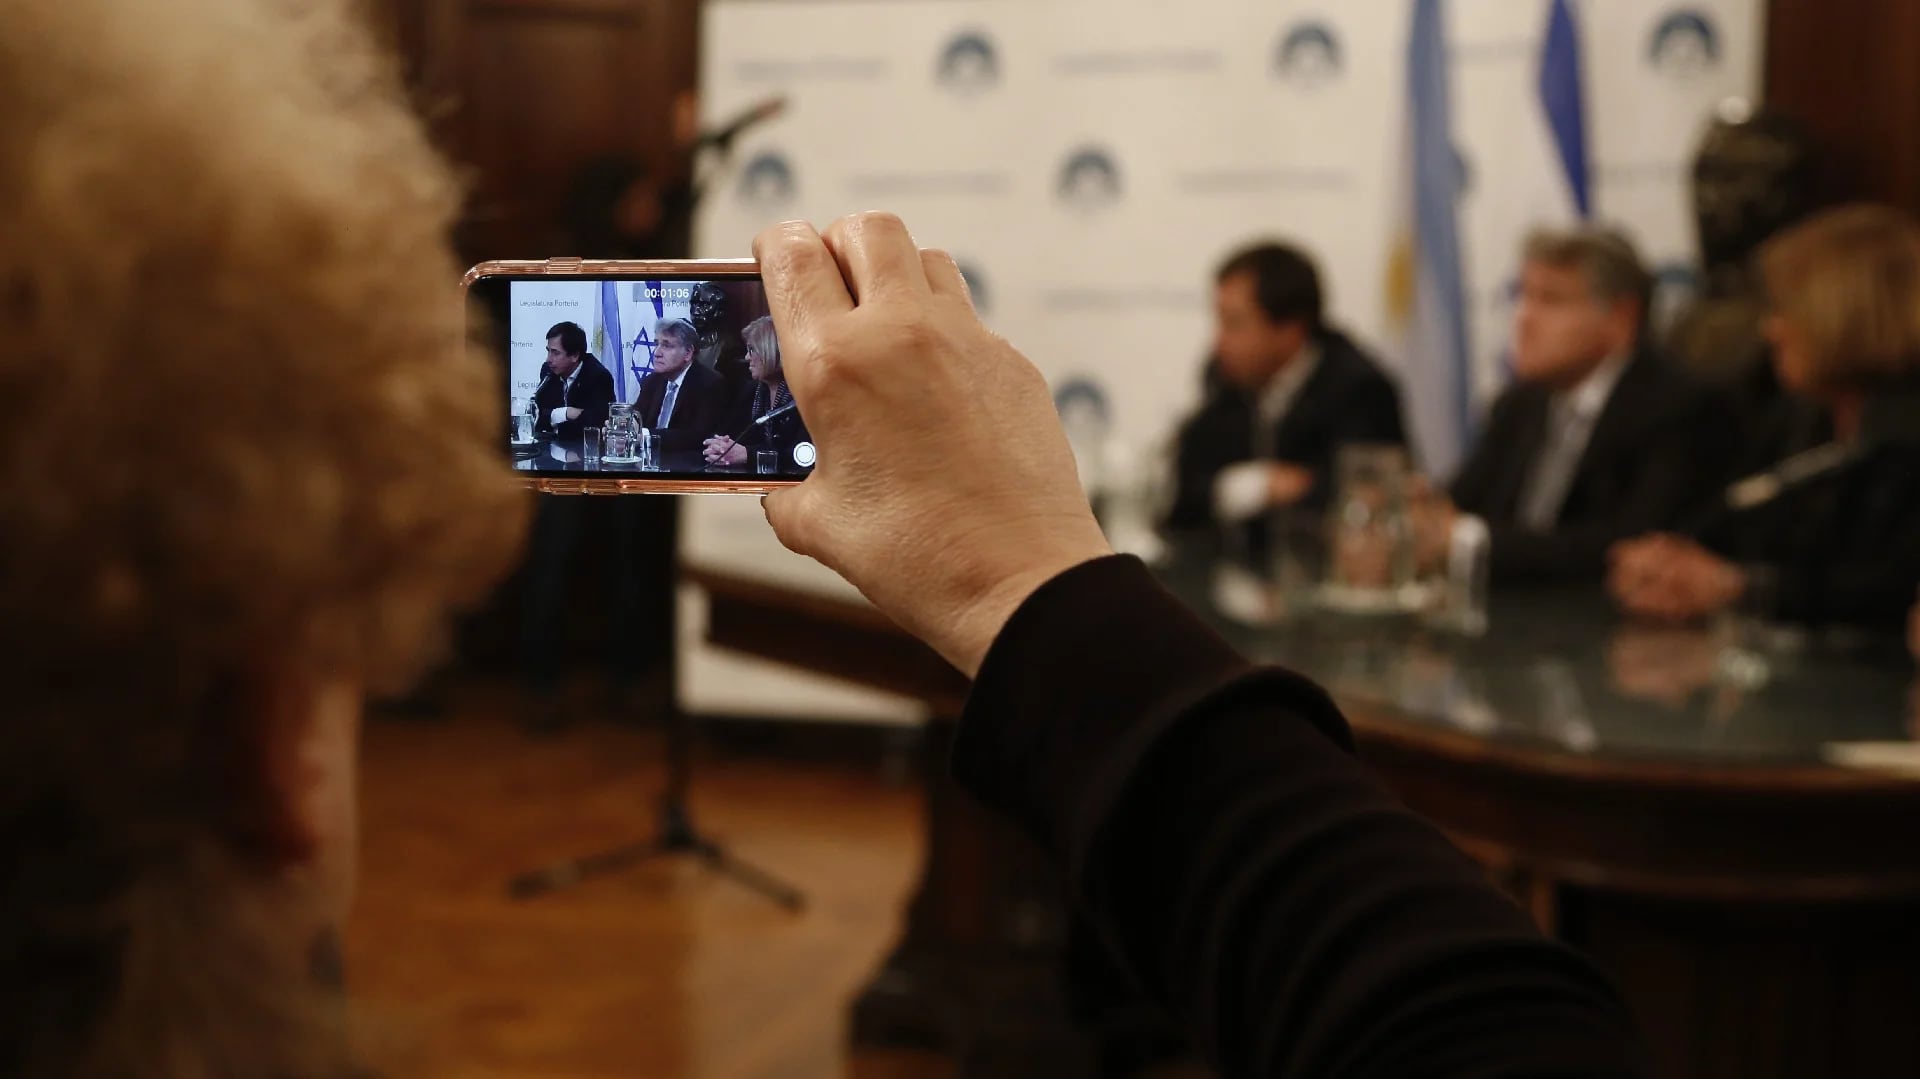 “El diálogo es importante para la unión de los argentinos y estamos orgullosos de impulsar este reconocimiento”, dijo el ex legislador y actual diputado nacional Daniel Lipovetzky